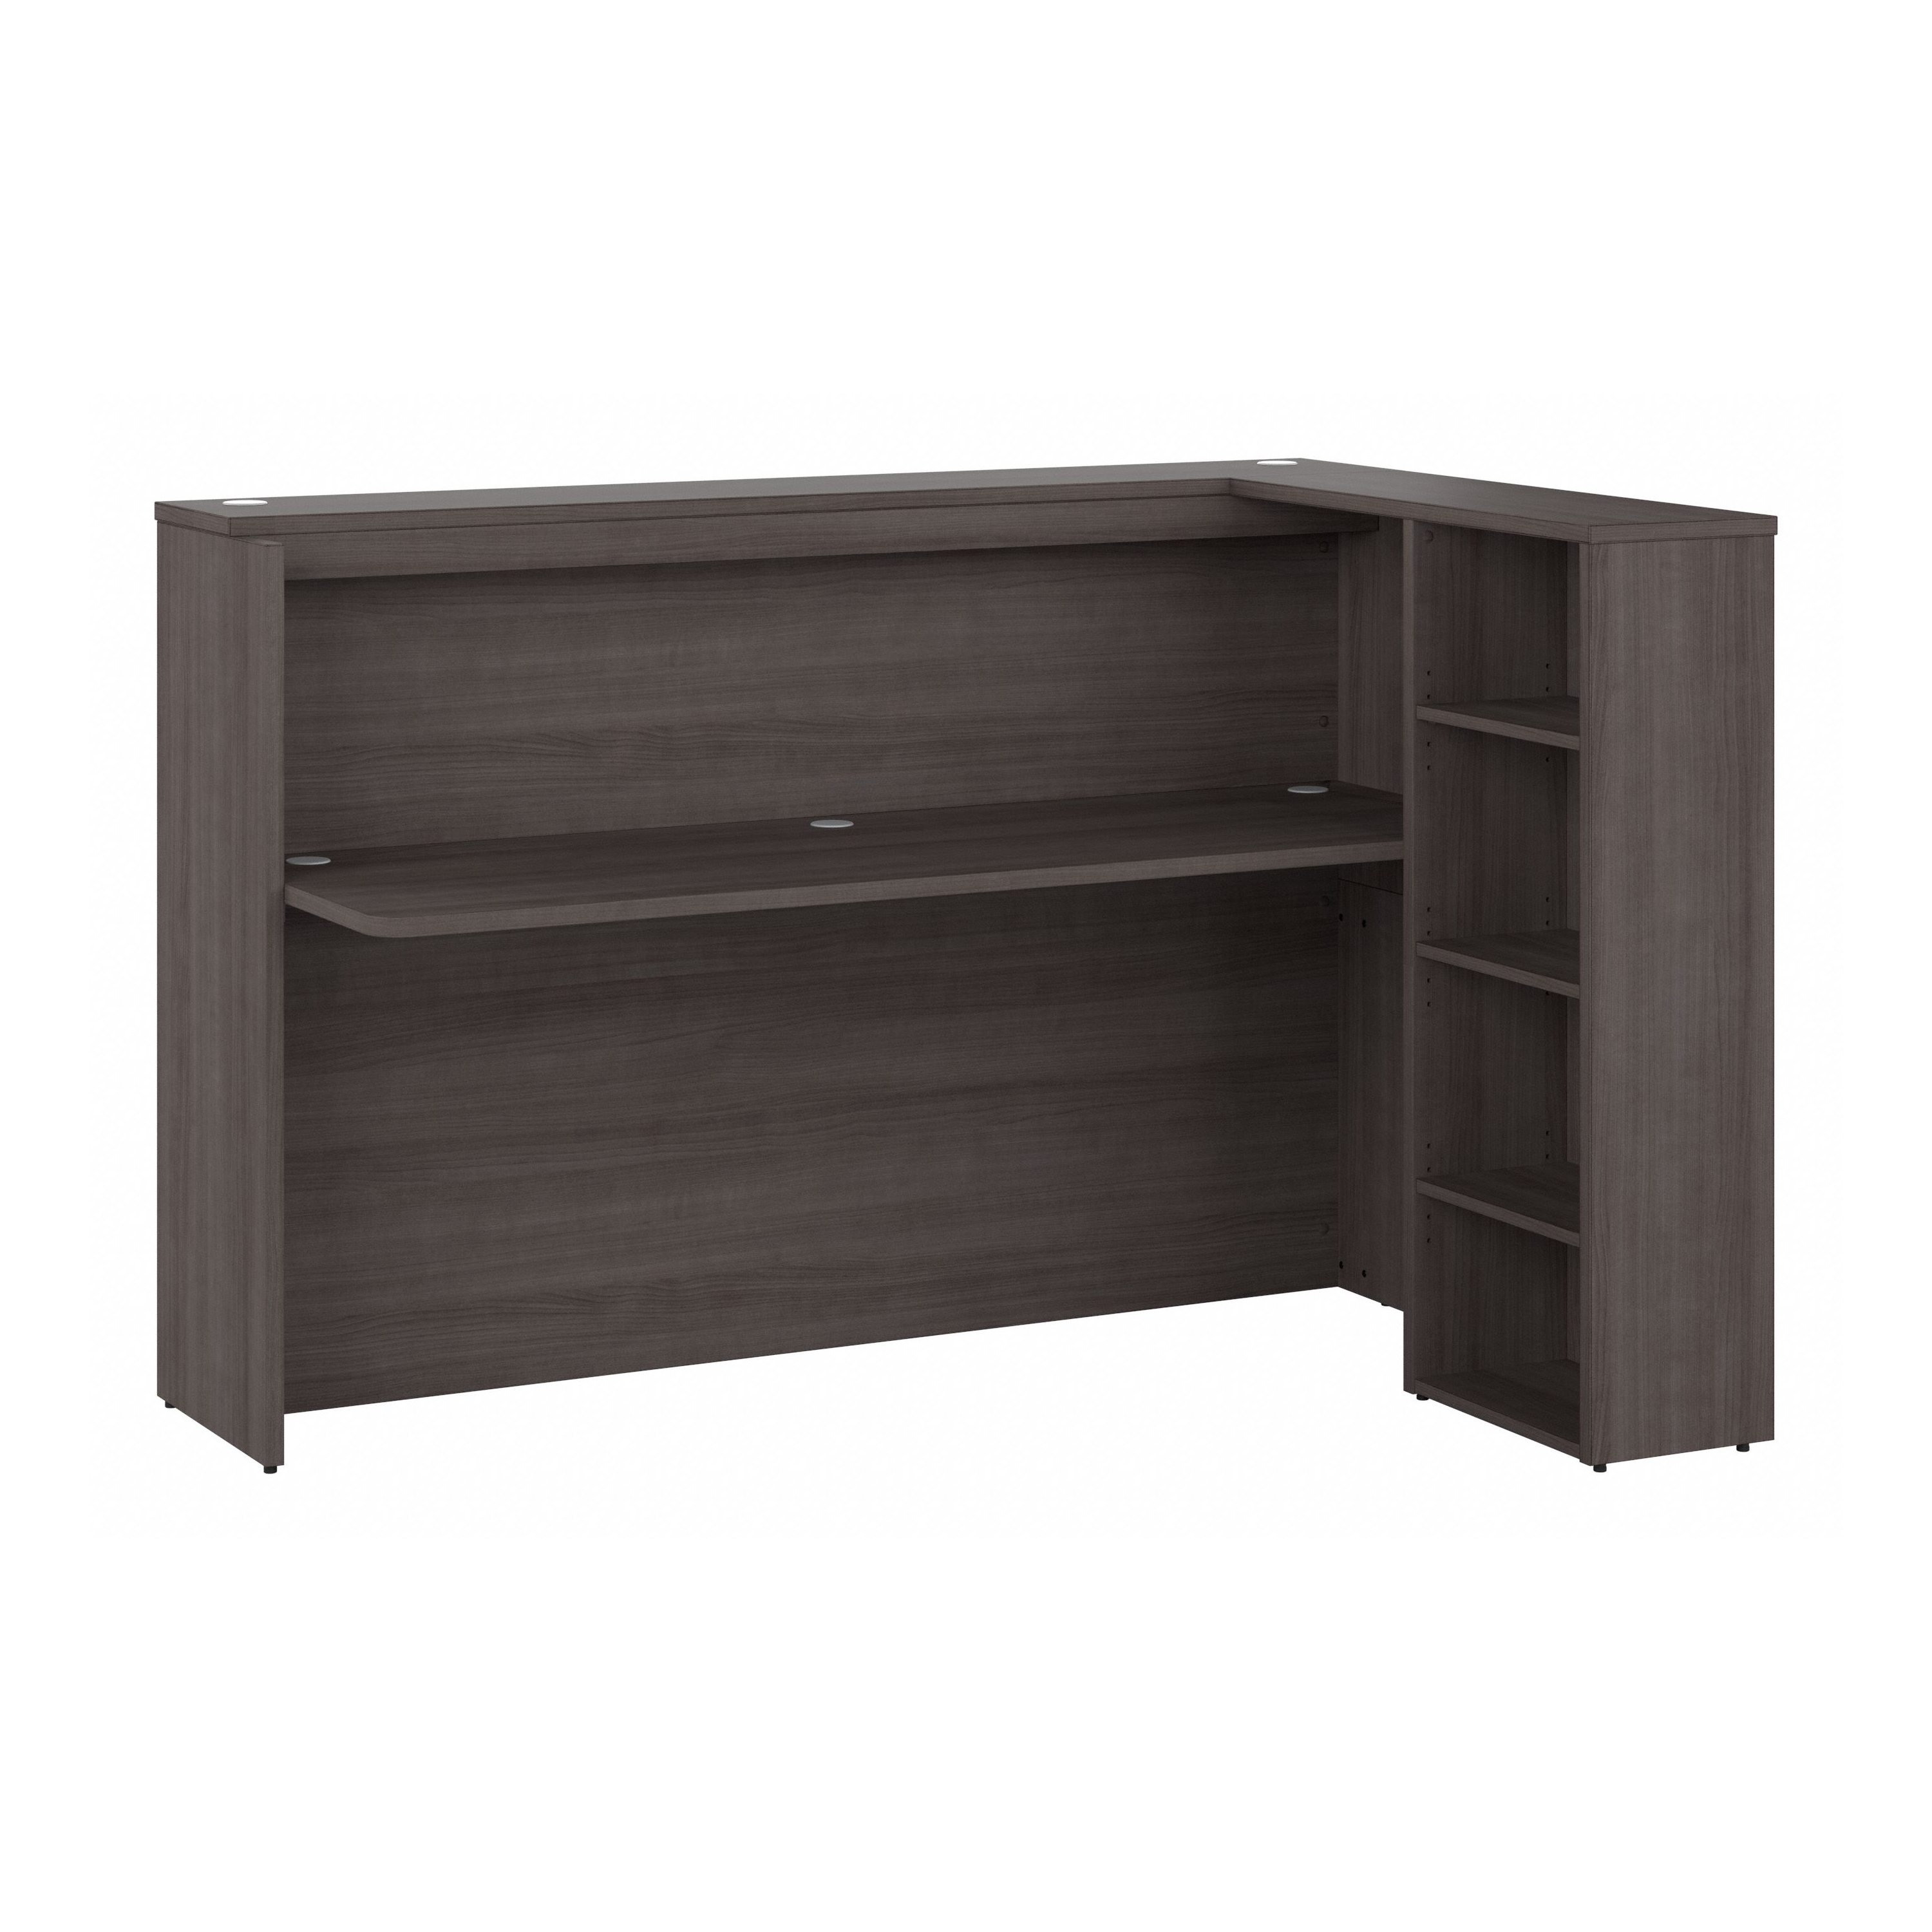 Shop Bush Business Furniture Studio C 72W Reception Desk with Shelves 02 SCD572SGK-Z1 #color_storm gray